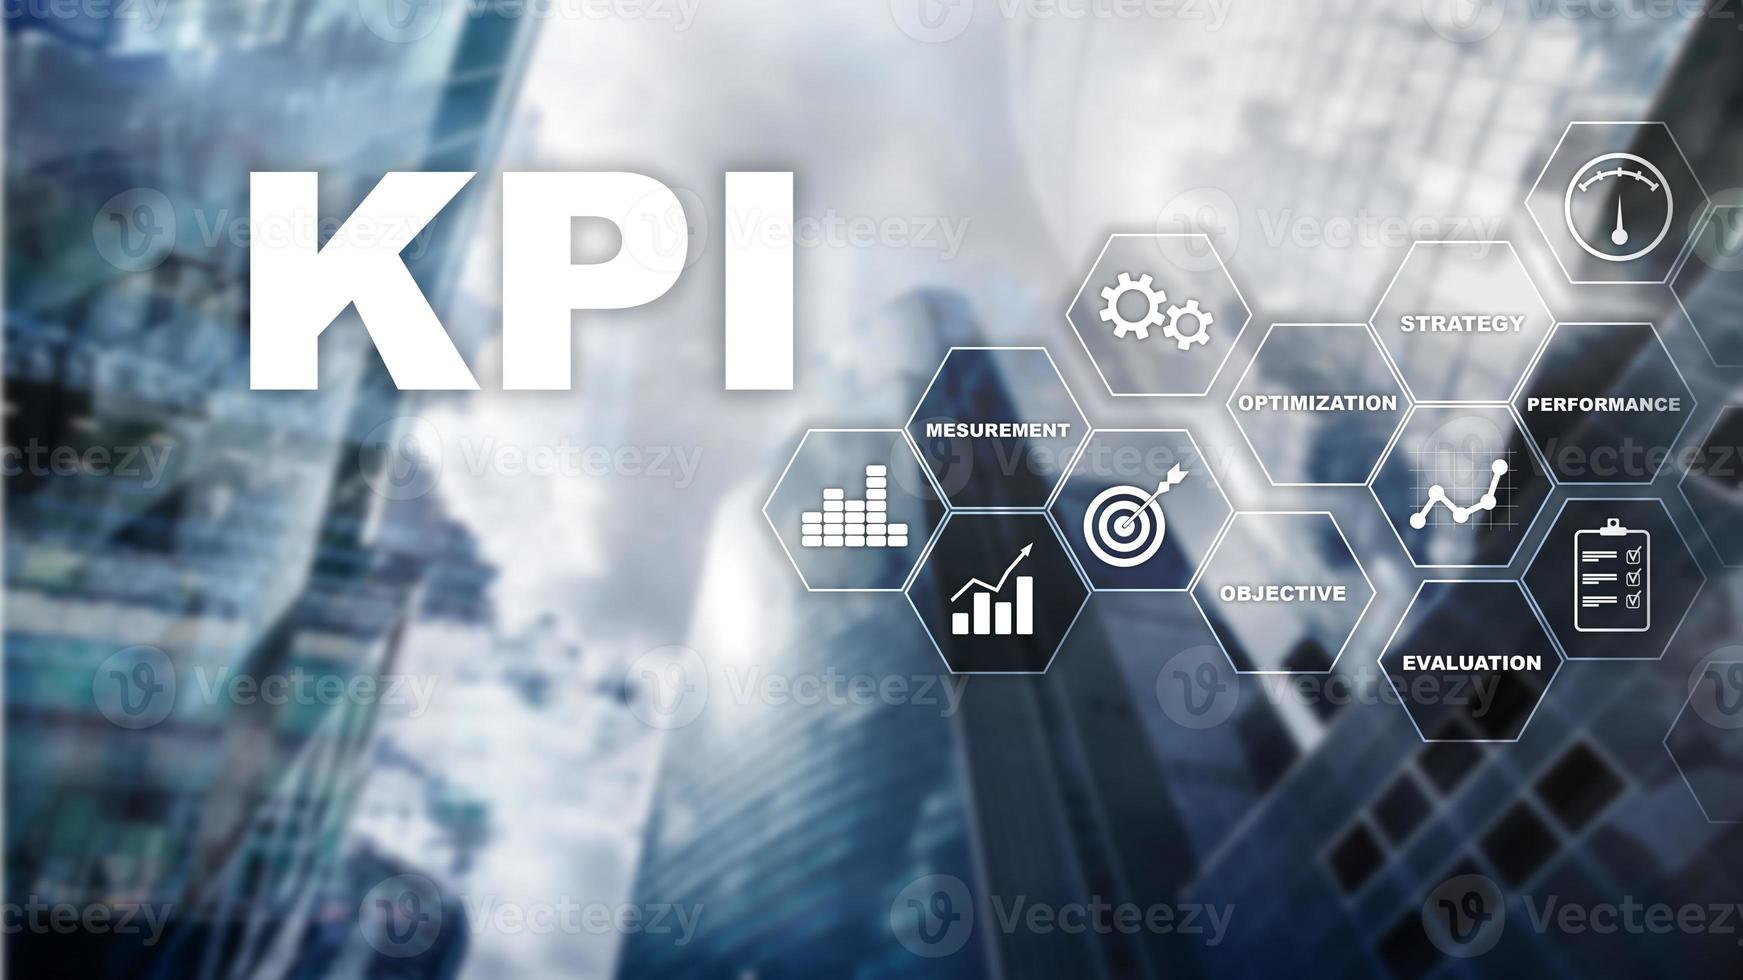 kpi - indicateur de performance clé. concept d'entreprise et de technologie. exposition multiple, techniques mixtes. concept financier sur fond flou photo